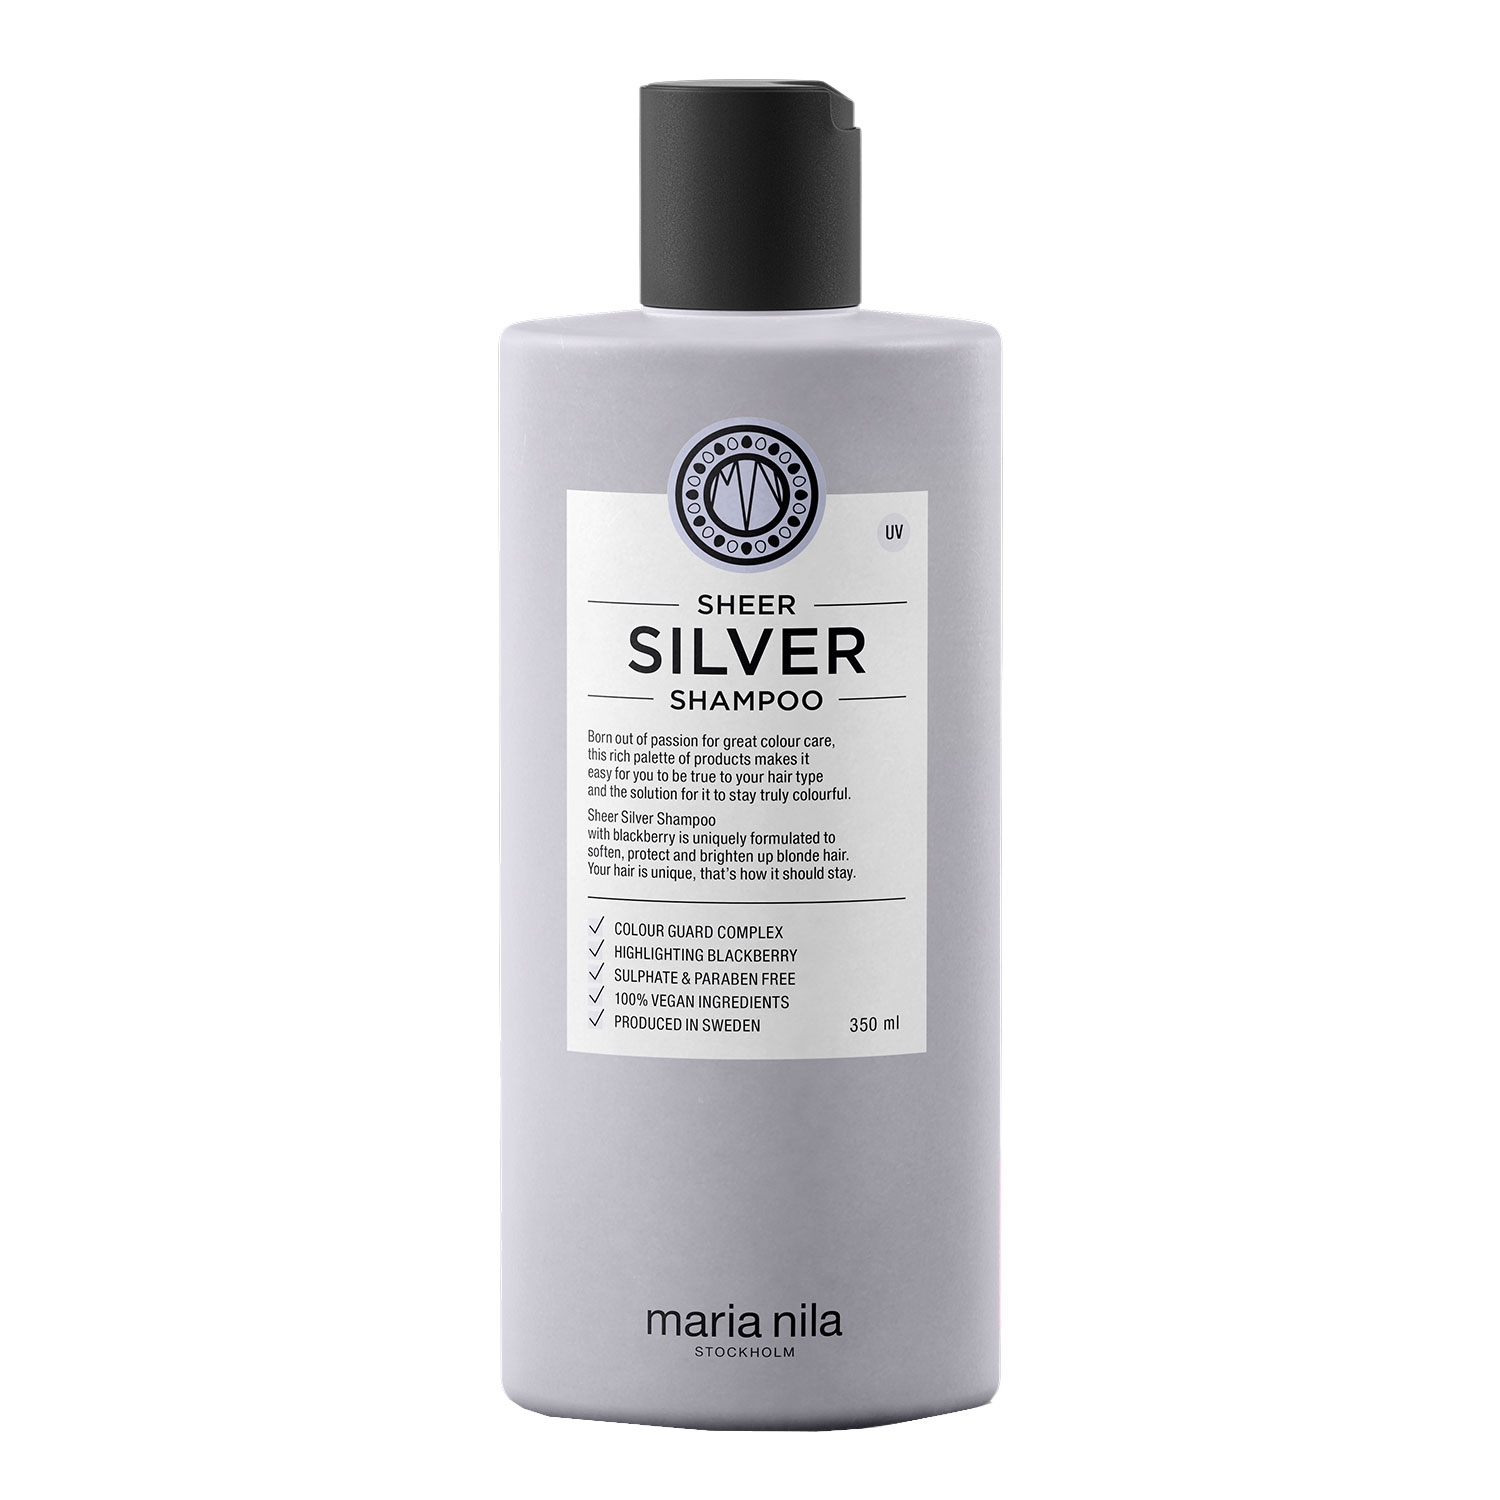 Produktbild von Care & Style - Sheer Silver Shampoo